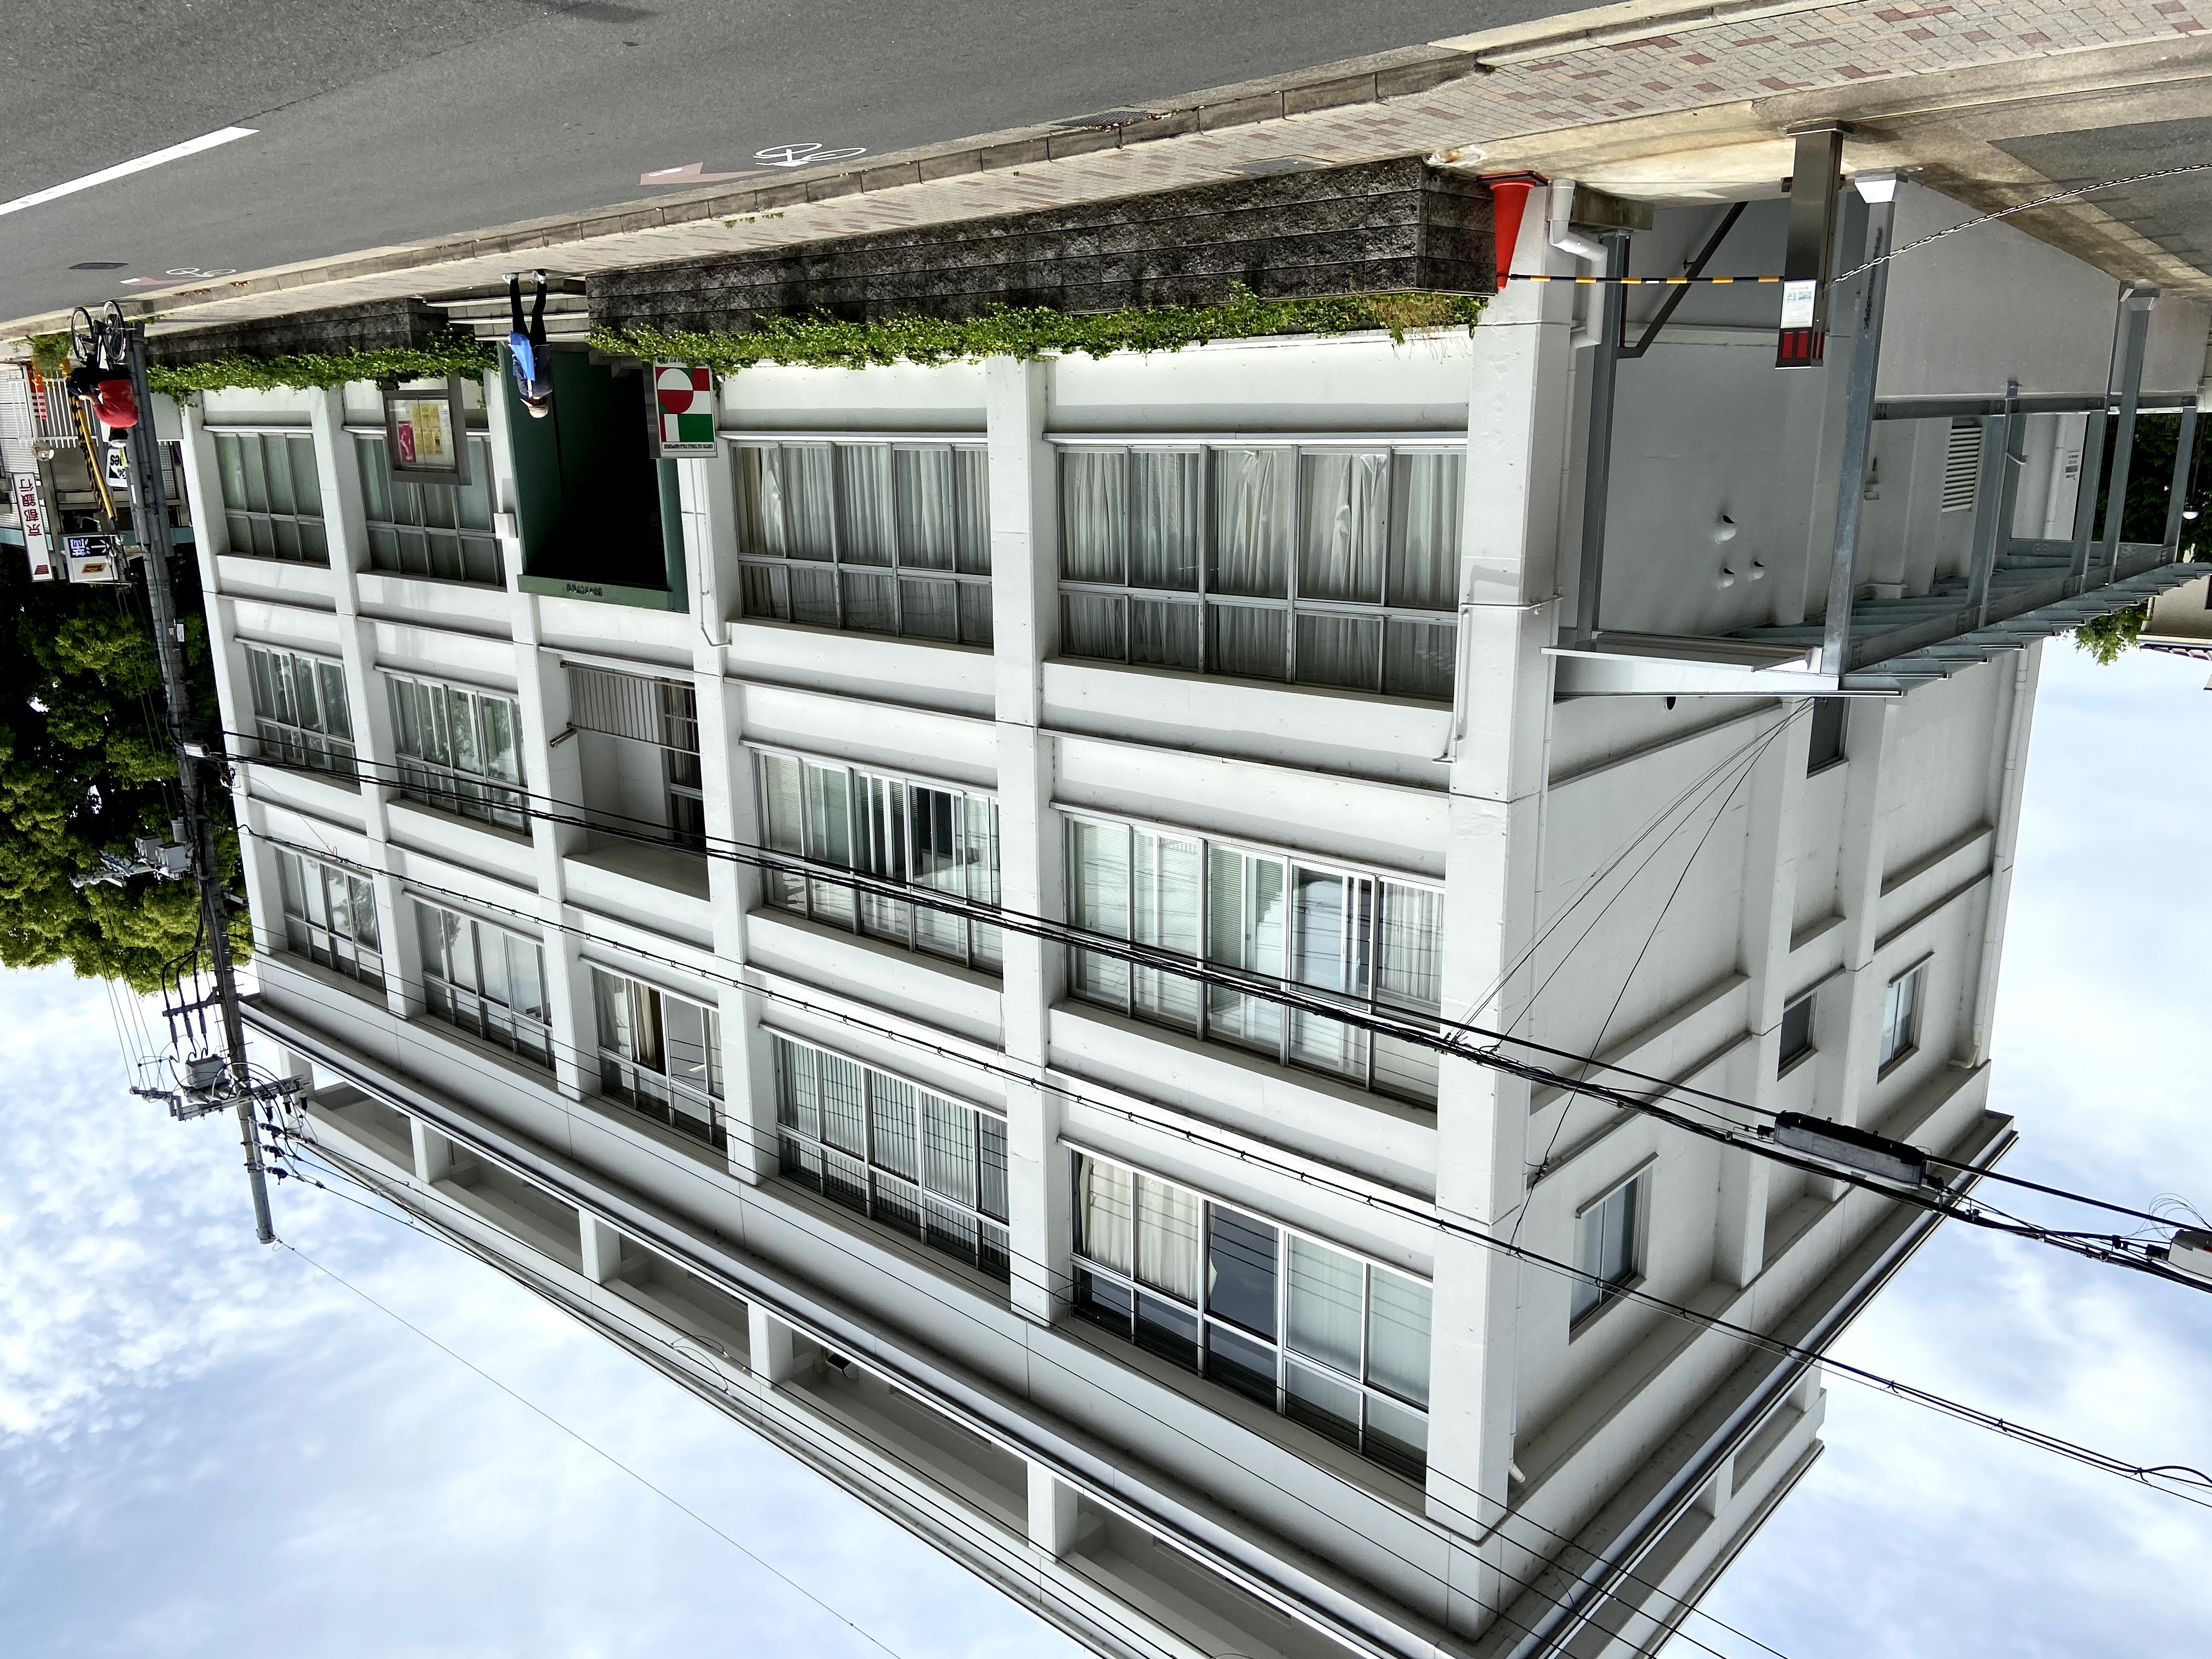 京都大学にほど近い日本イタリア会館の２階フロアがAIシステム研究所のオフィス。地下や３階にも実験室などがある。